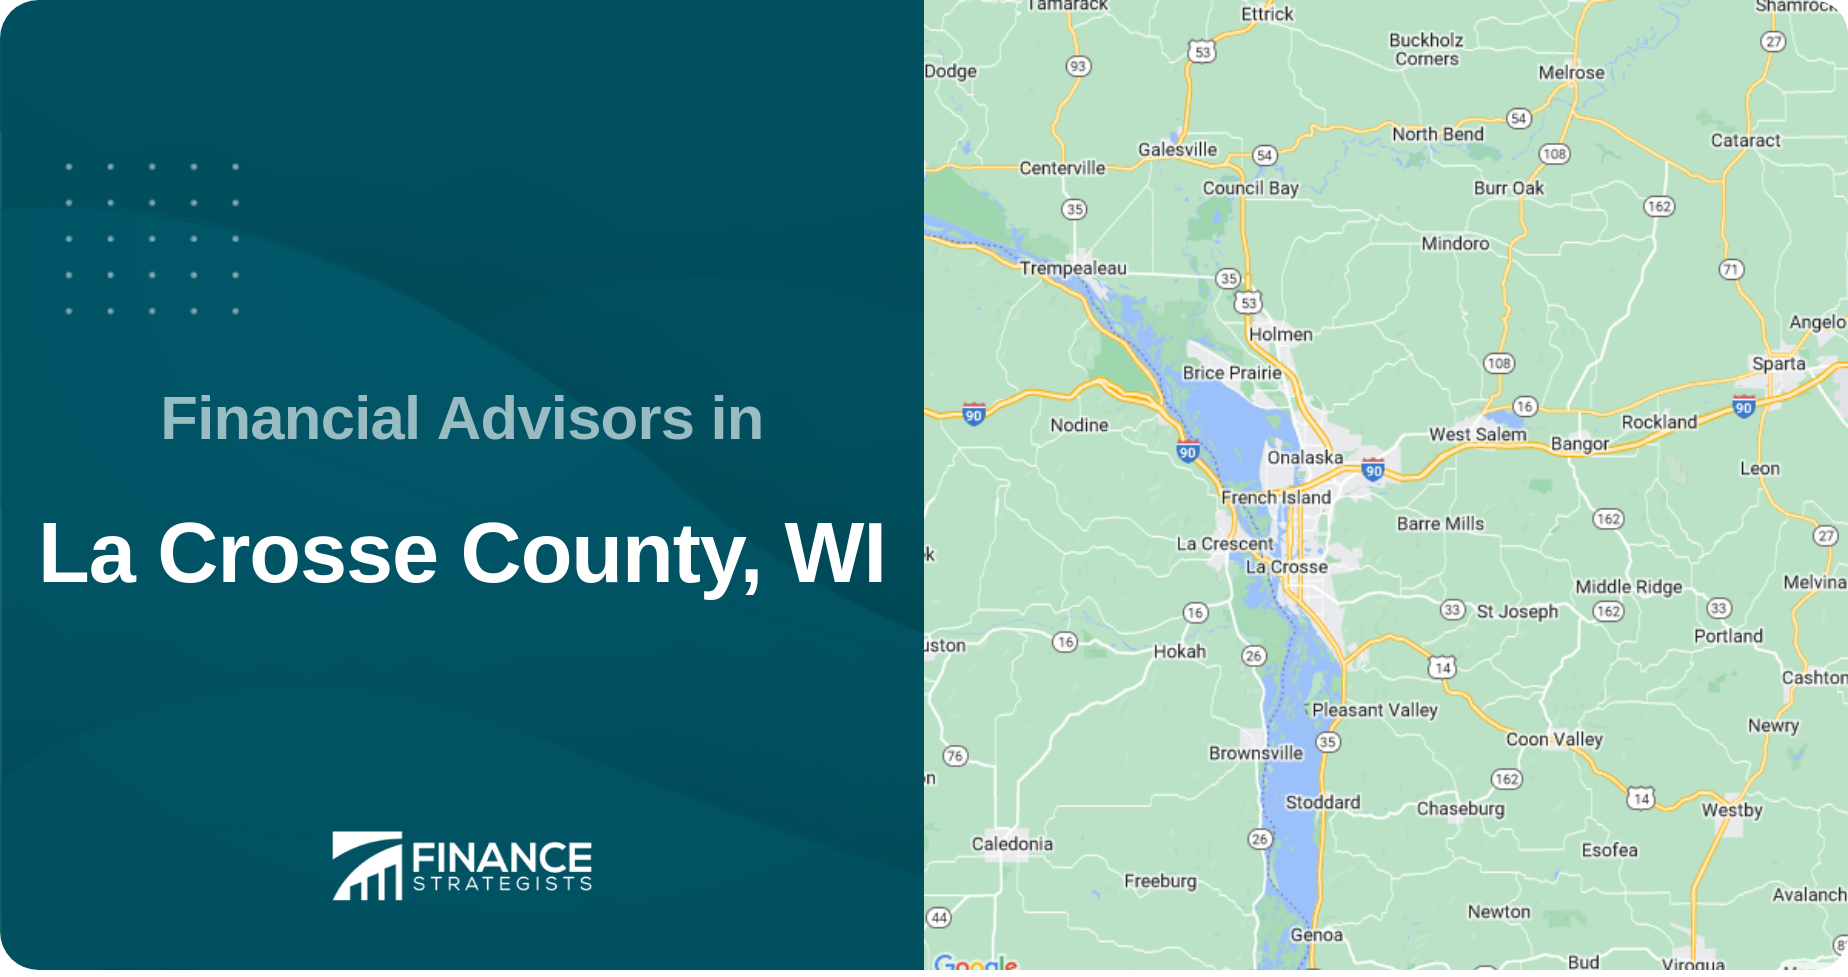 Financial Advisors in La Crosse County, WI